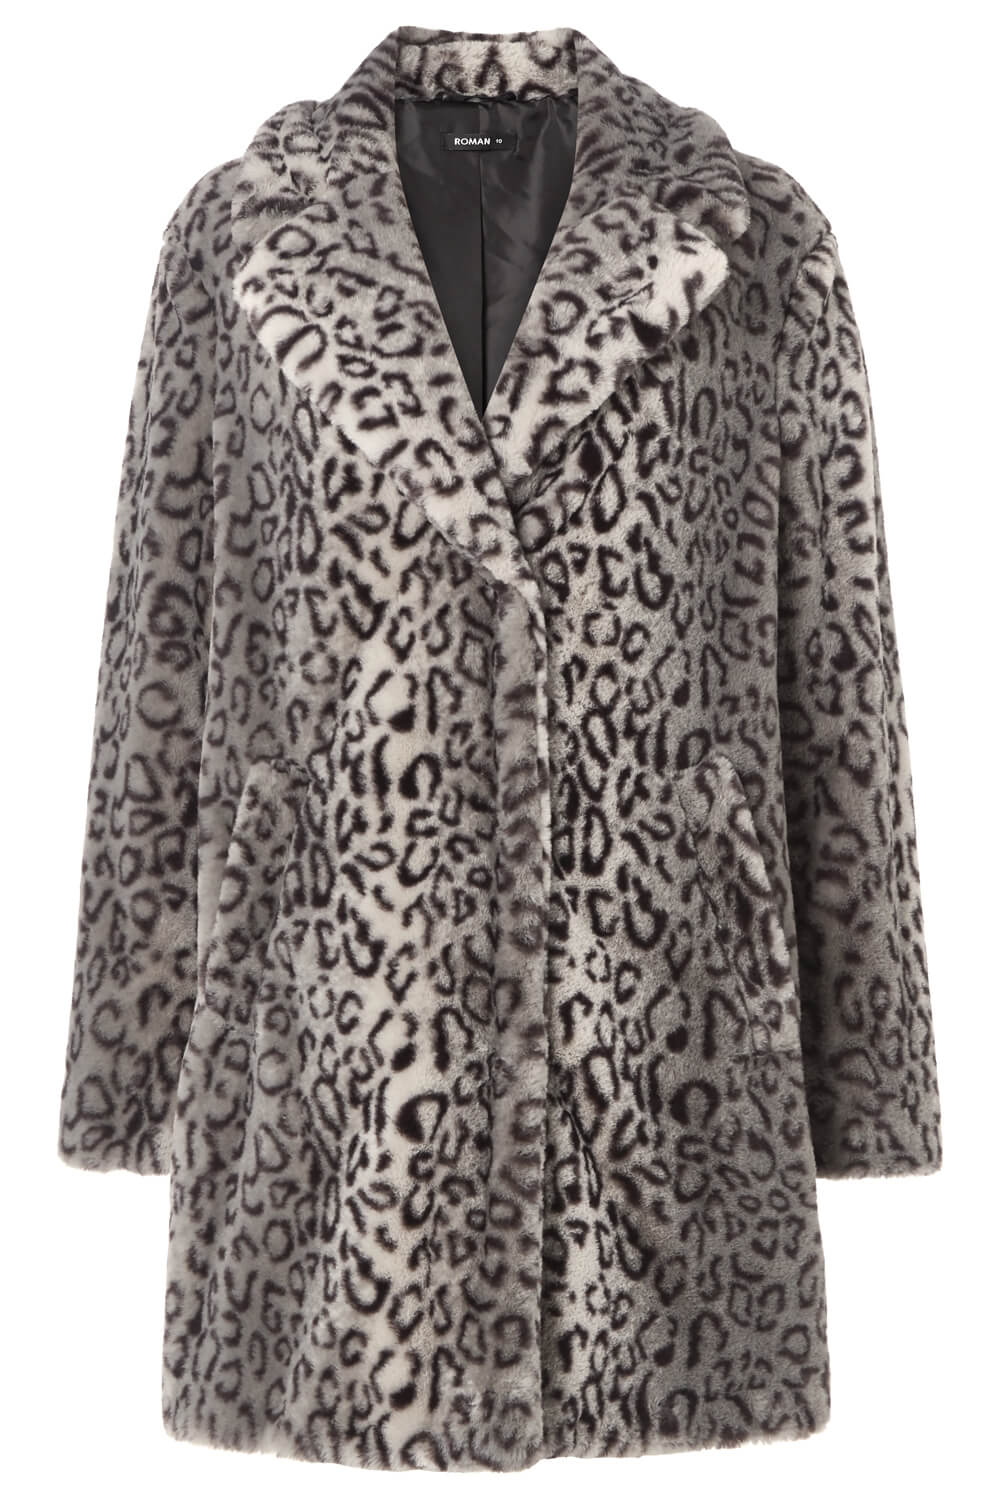 Grey Faux Fur Animal Print Coat, Image 5 of 5